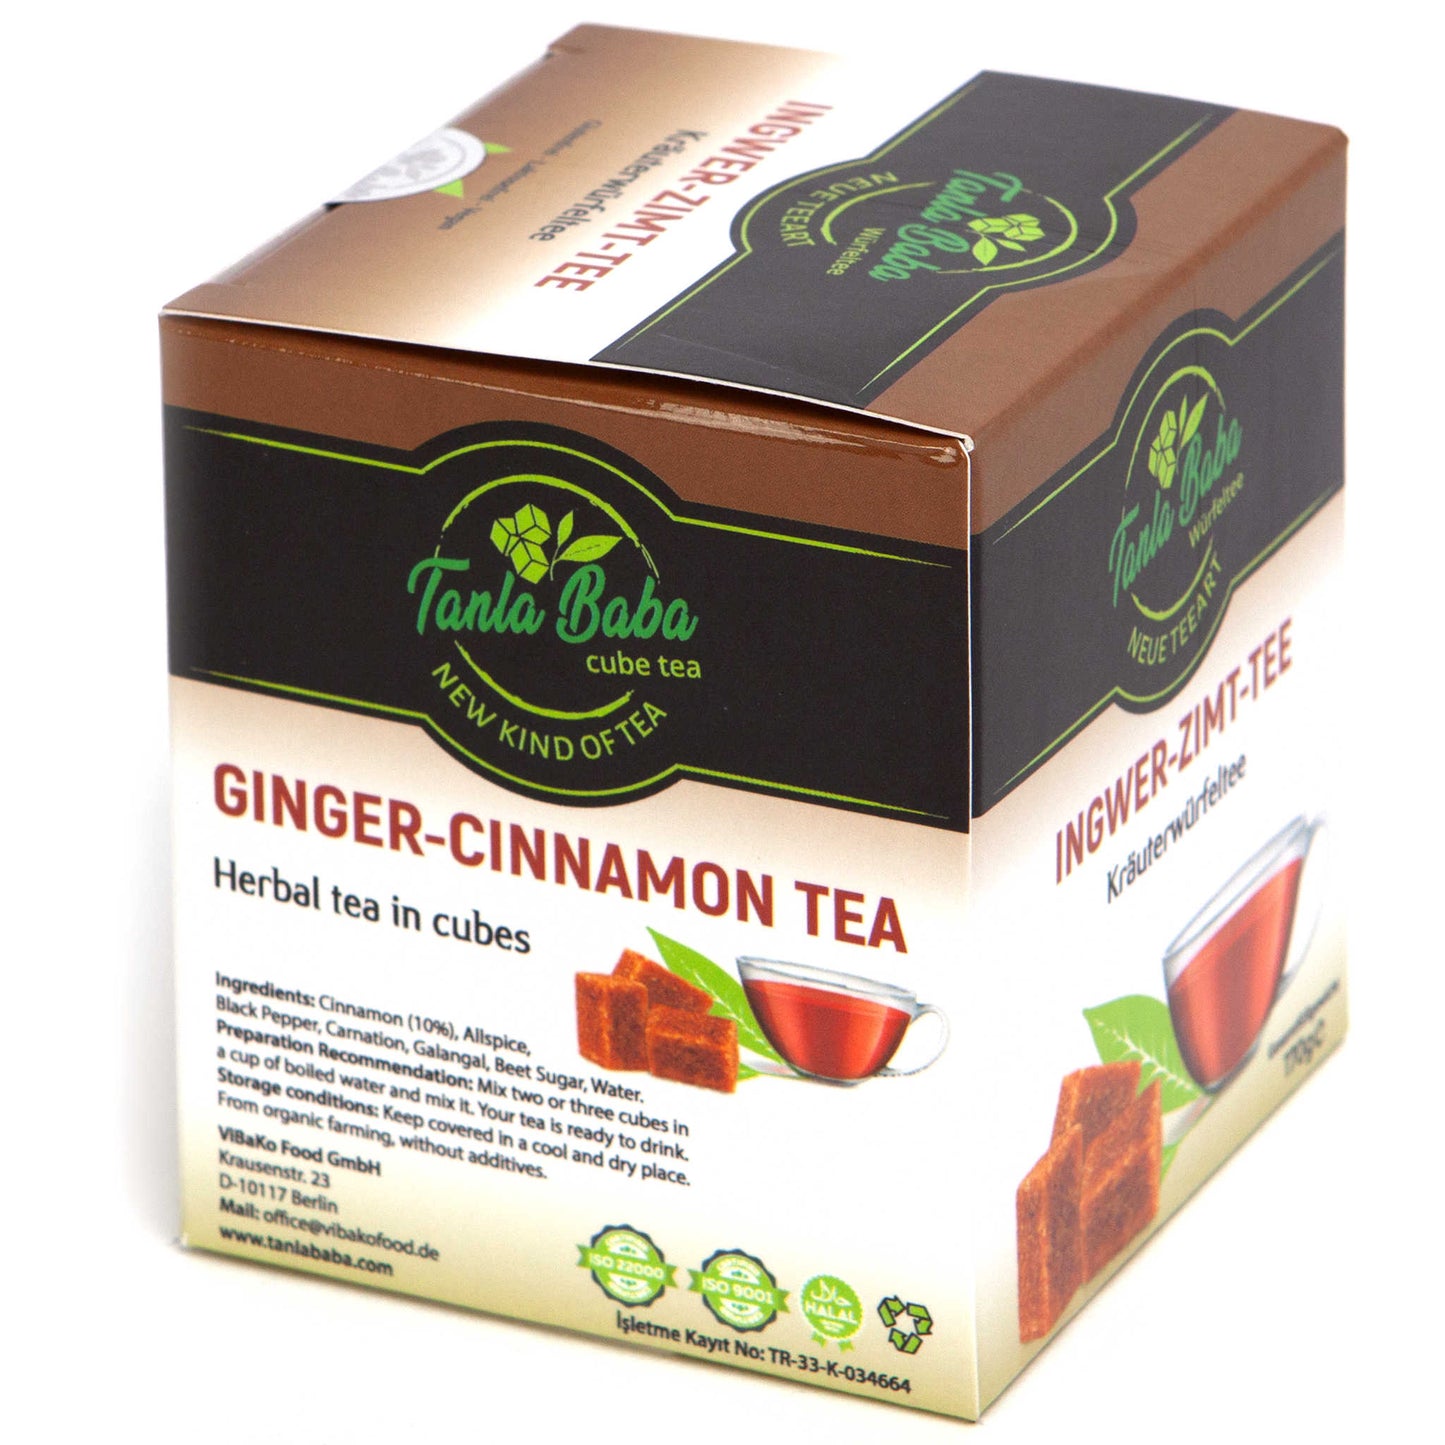 
                  
                    Ginger and cinnamon tea
                  
                